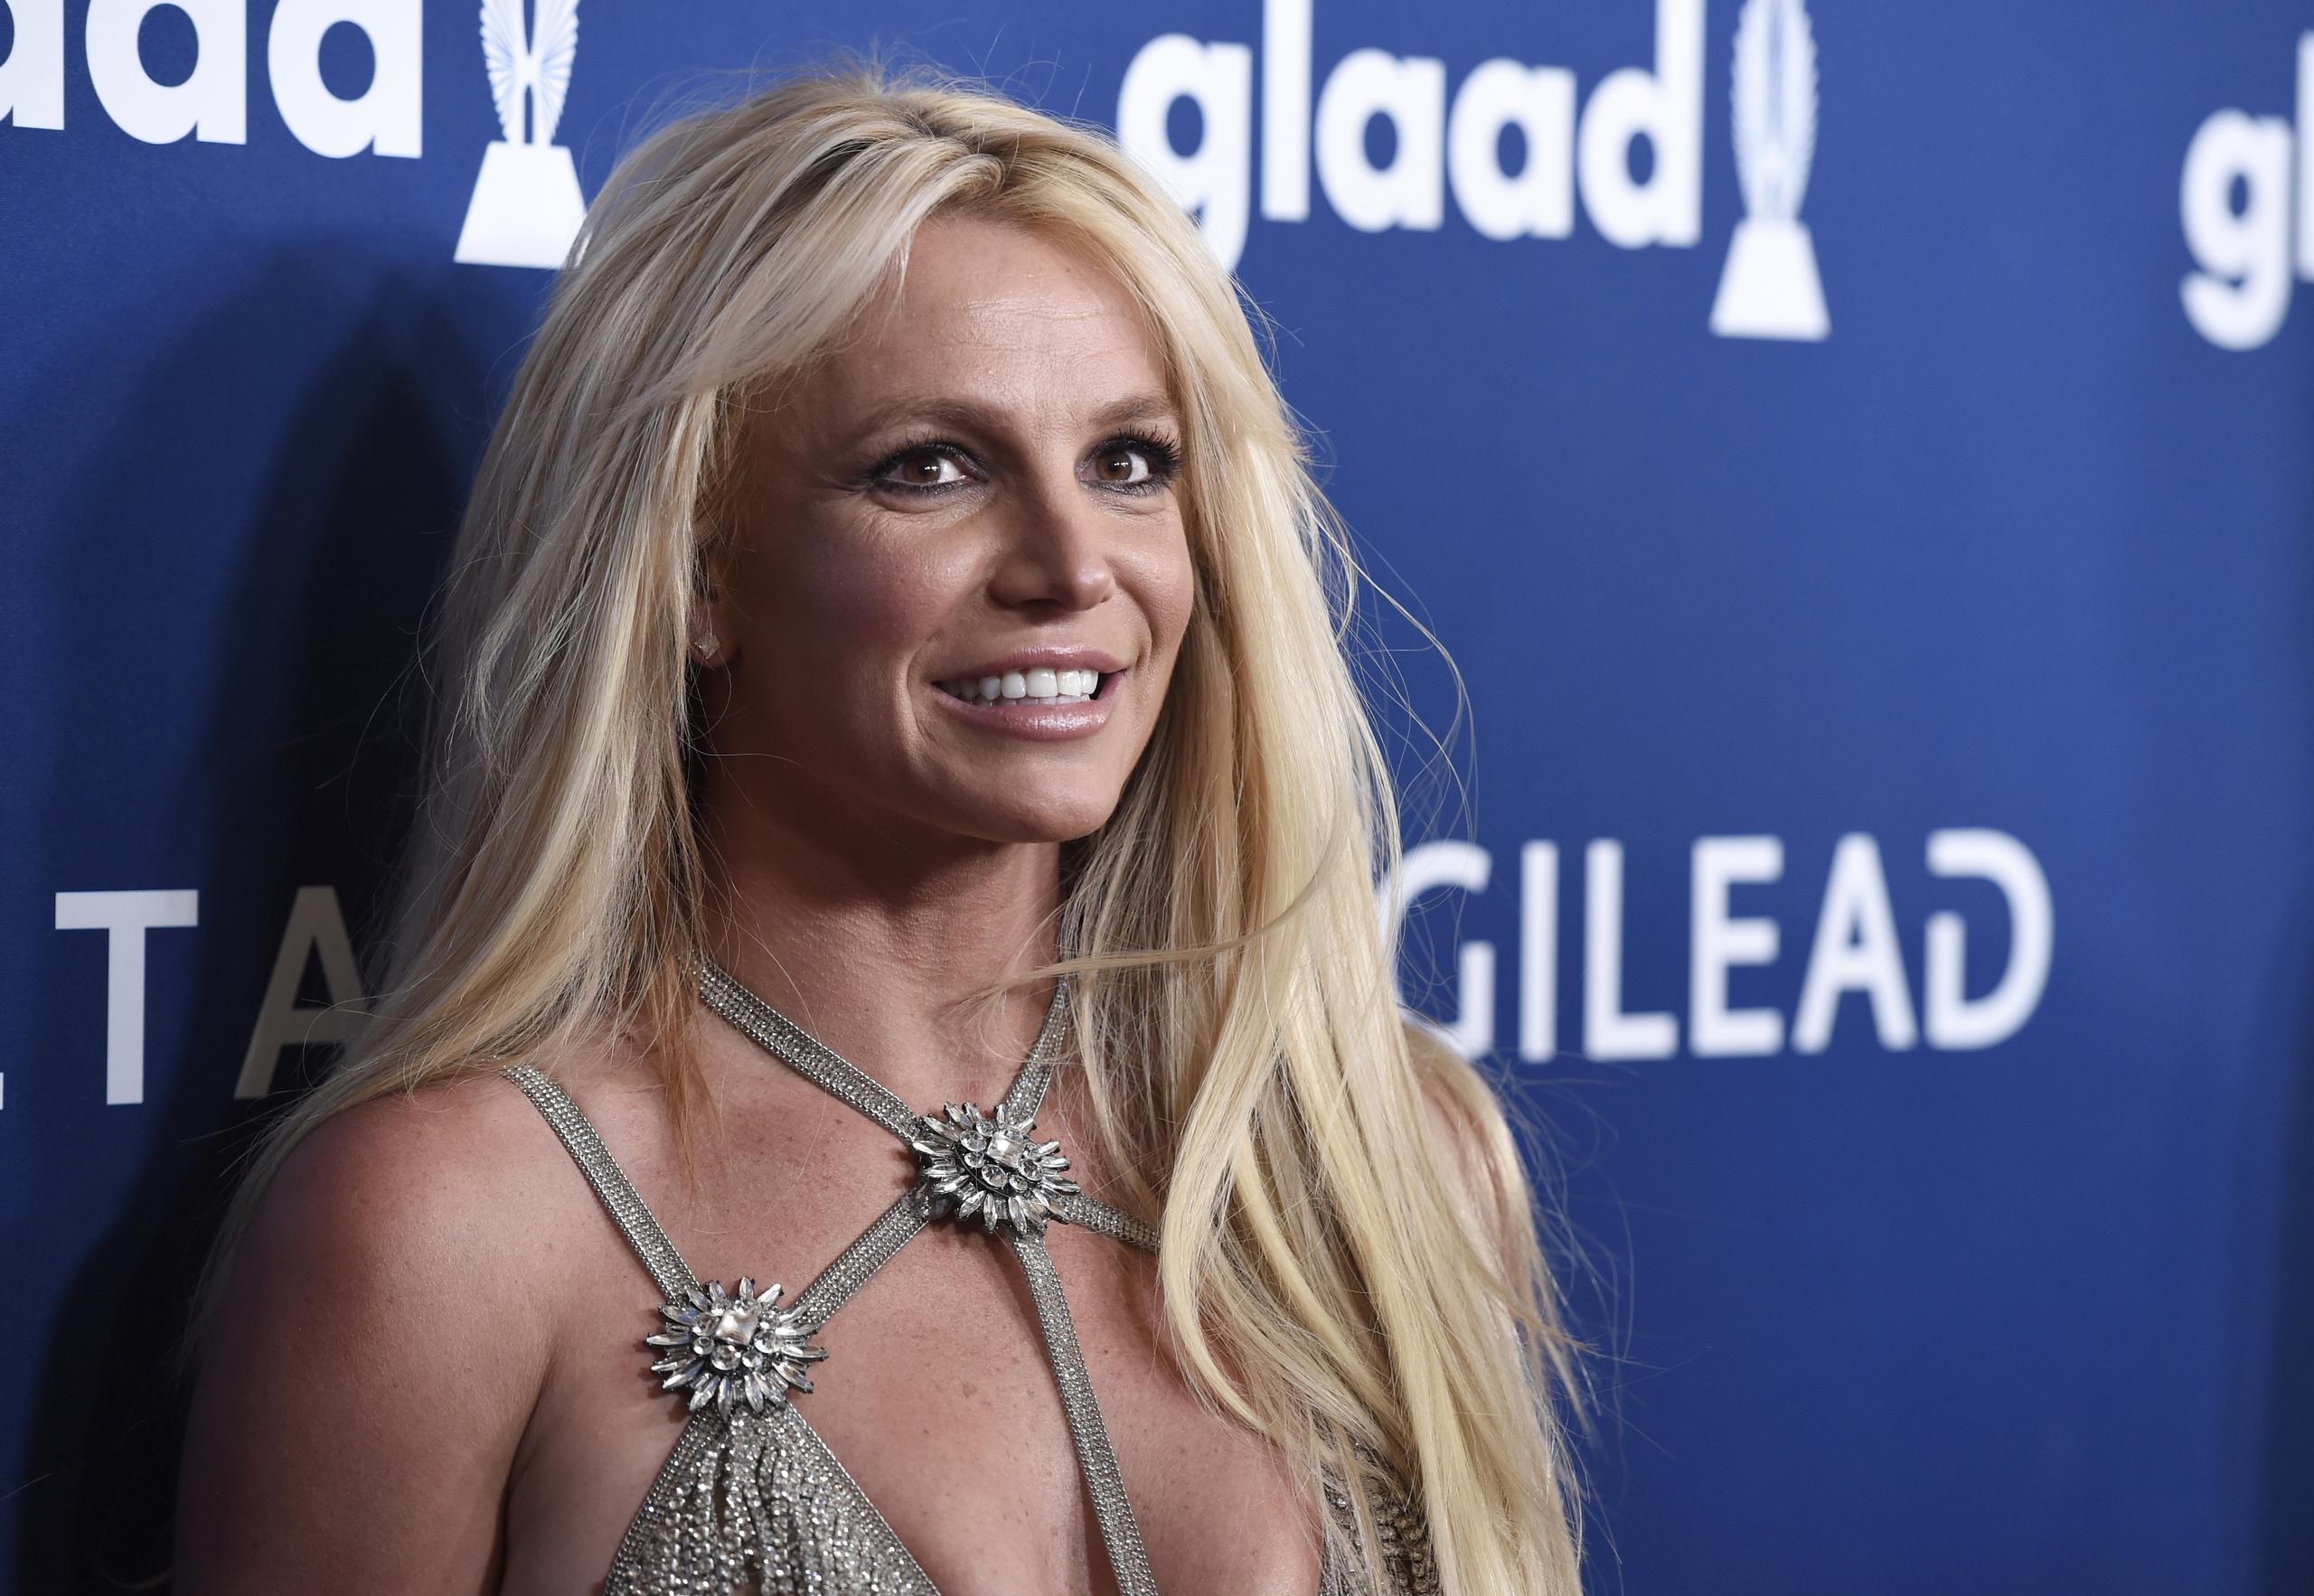 Desde 2008 Britney Spears permanece bajo el control legal de su padre por una tutela dictaminada por un juez.